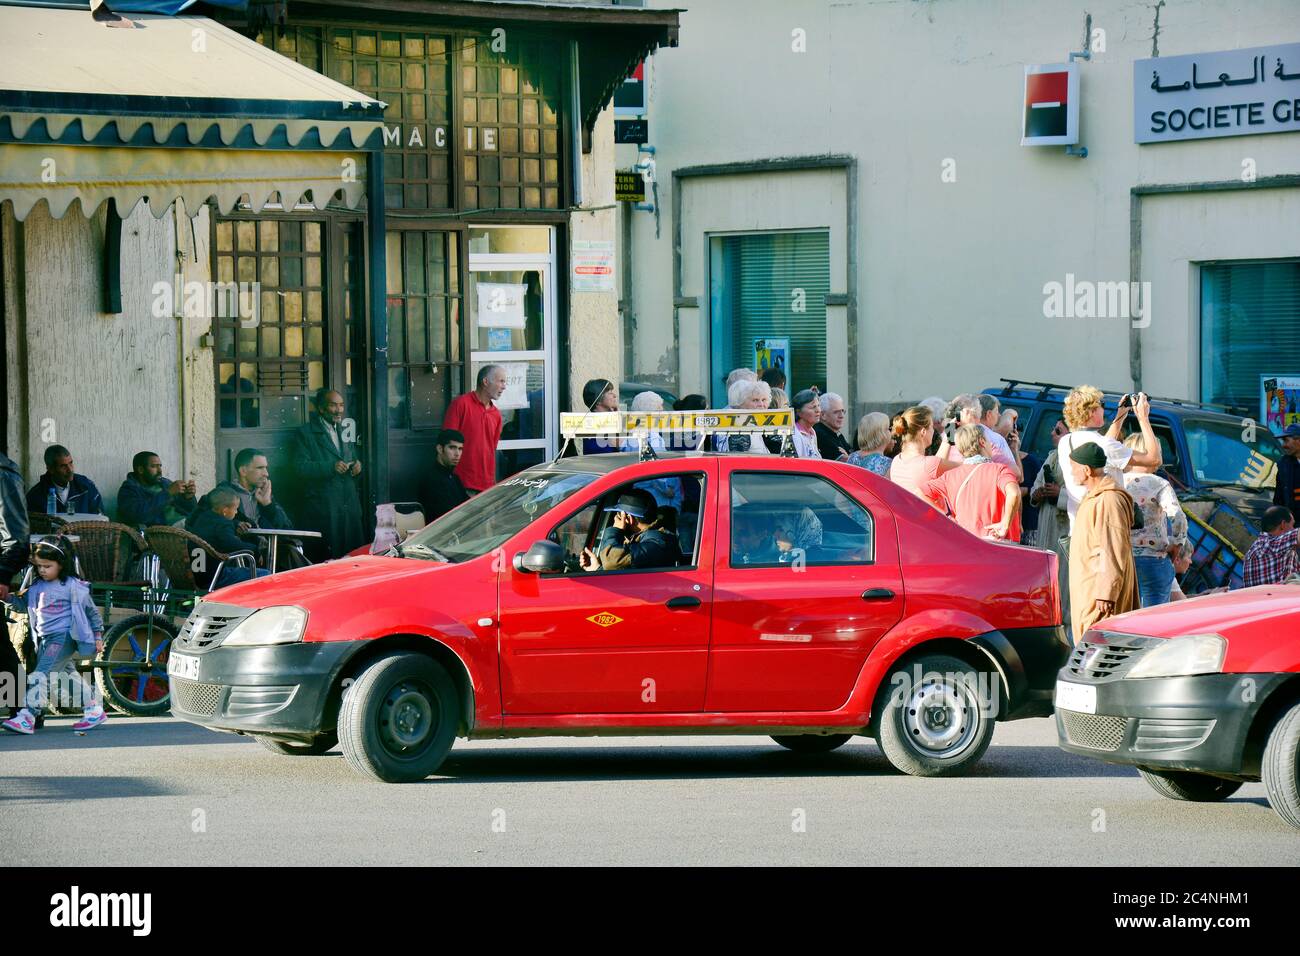 Fes, Marokko - 20. November 2014: Nicht identifizierte Personen und rote Petit Taxi - ein traditionelles Verkehrsmittel für bis zu vier Personen, jede Stadt hatte eine andere Stockfoto